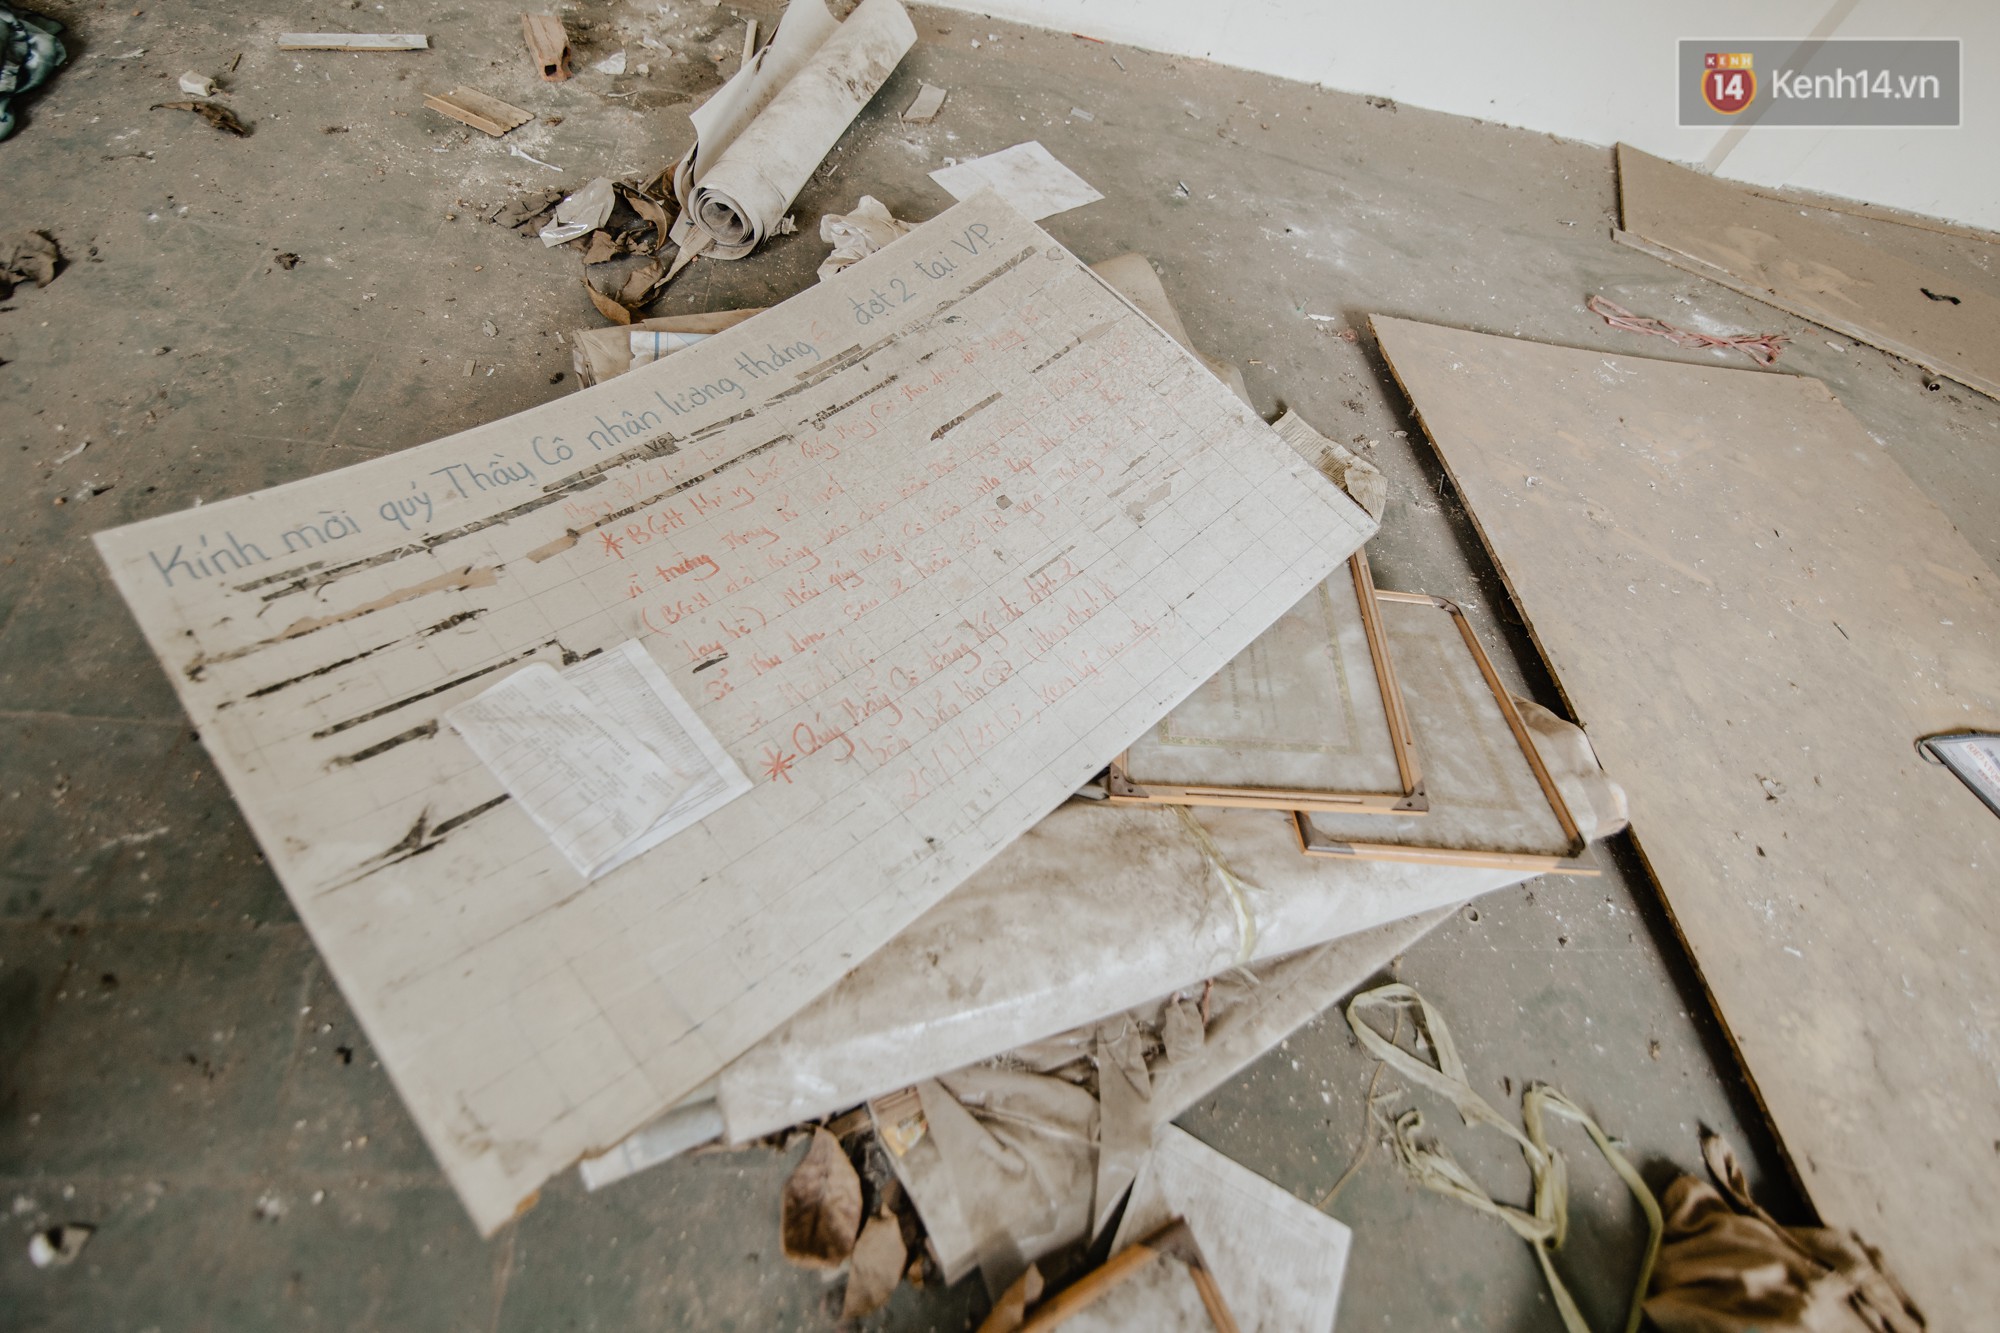 Khung cảnh rợn người bên trong trường học 40 năm tuổi bị bỏ hoang tại Sài Gòn - Ảnh 20.